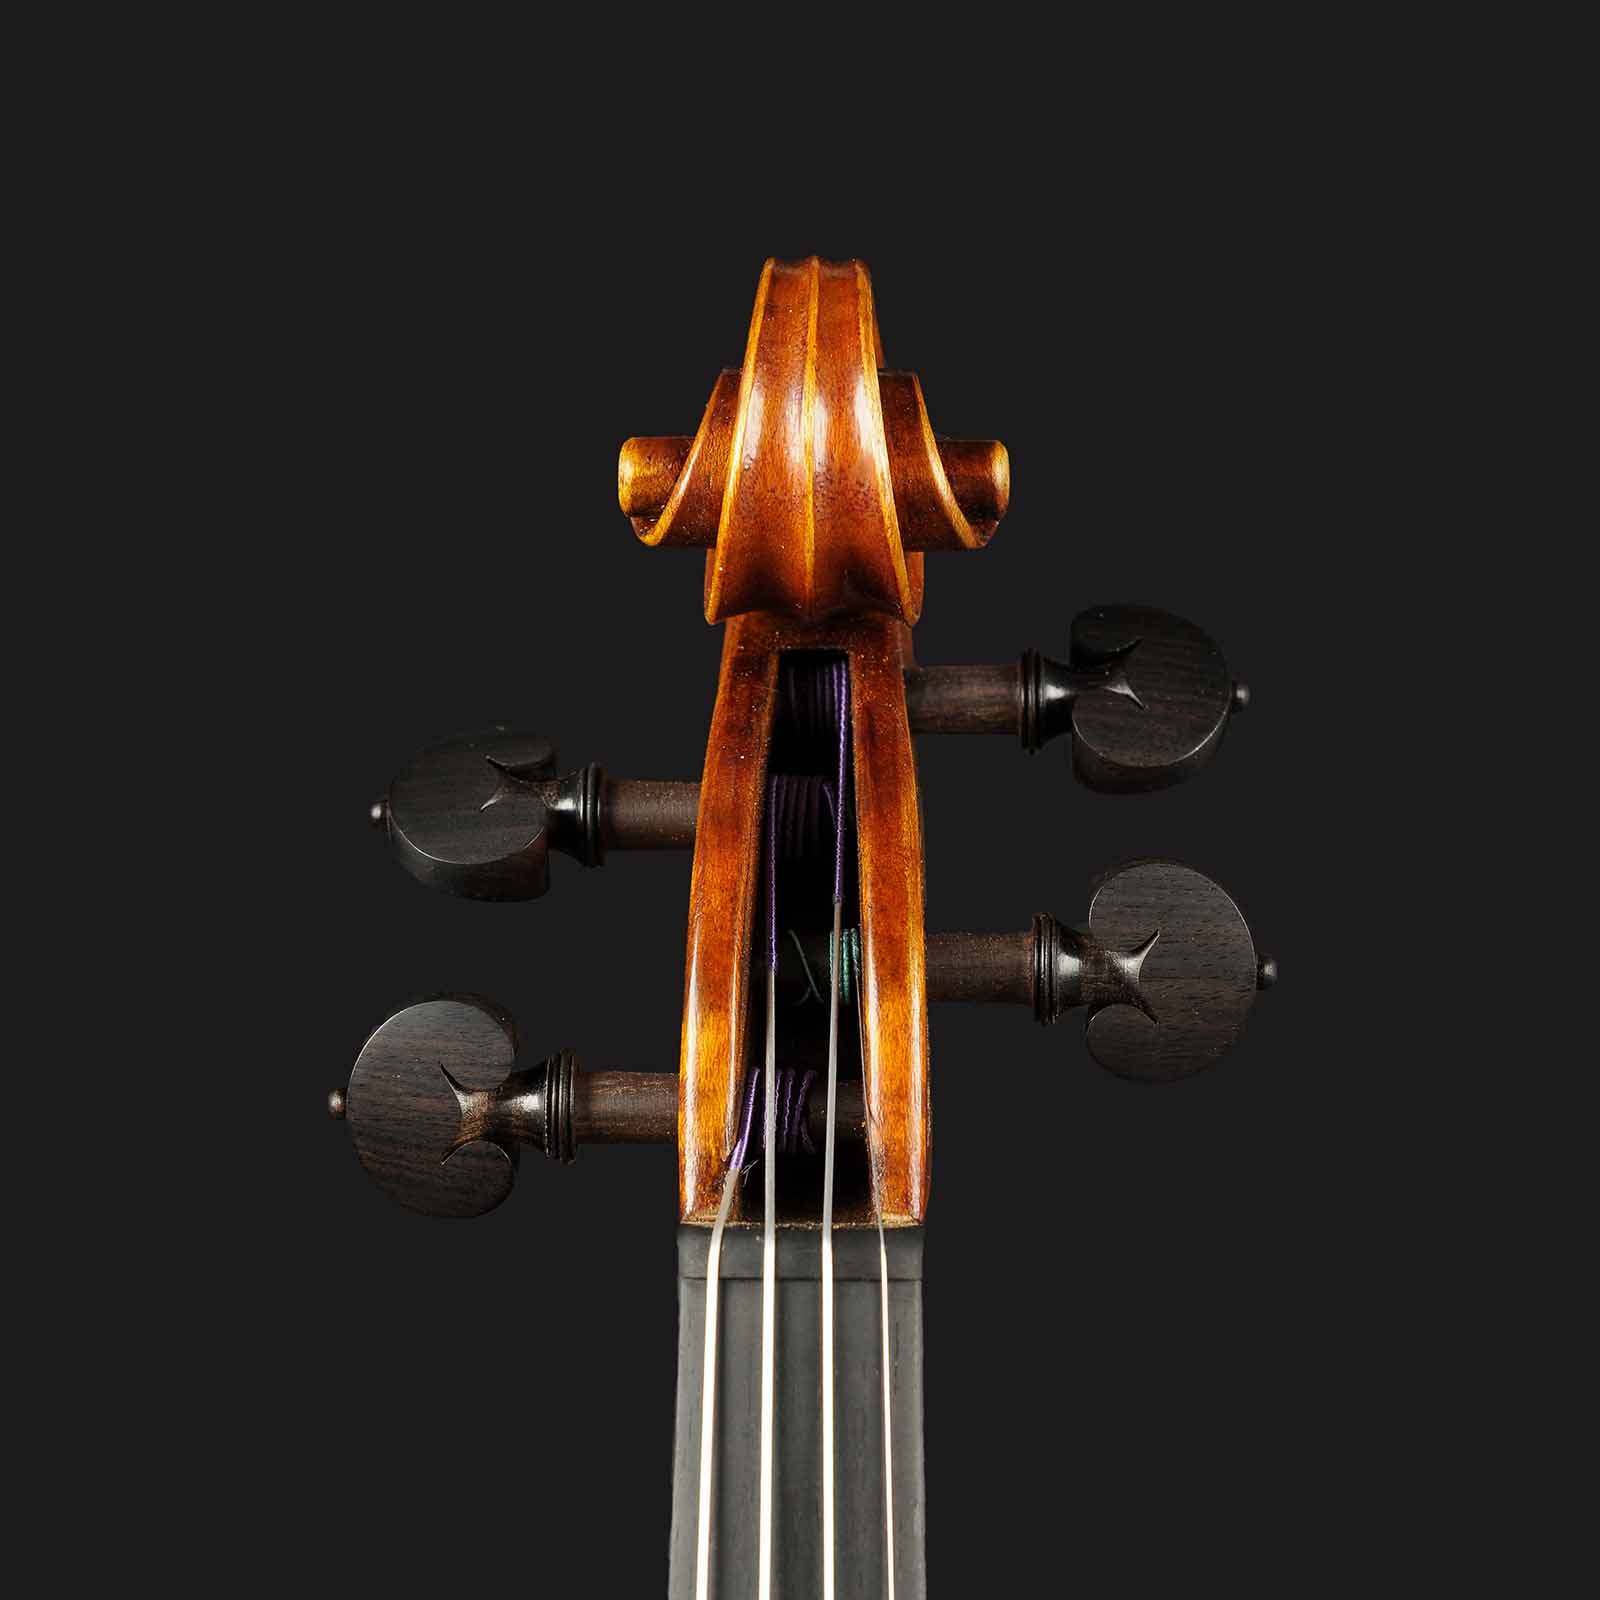 Stradivari & Del Gesù Stradivari & Mod. Del Gesù “The Twins“ - Image 3